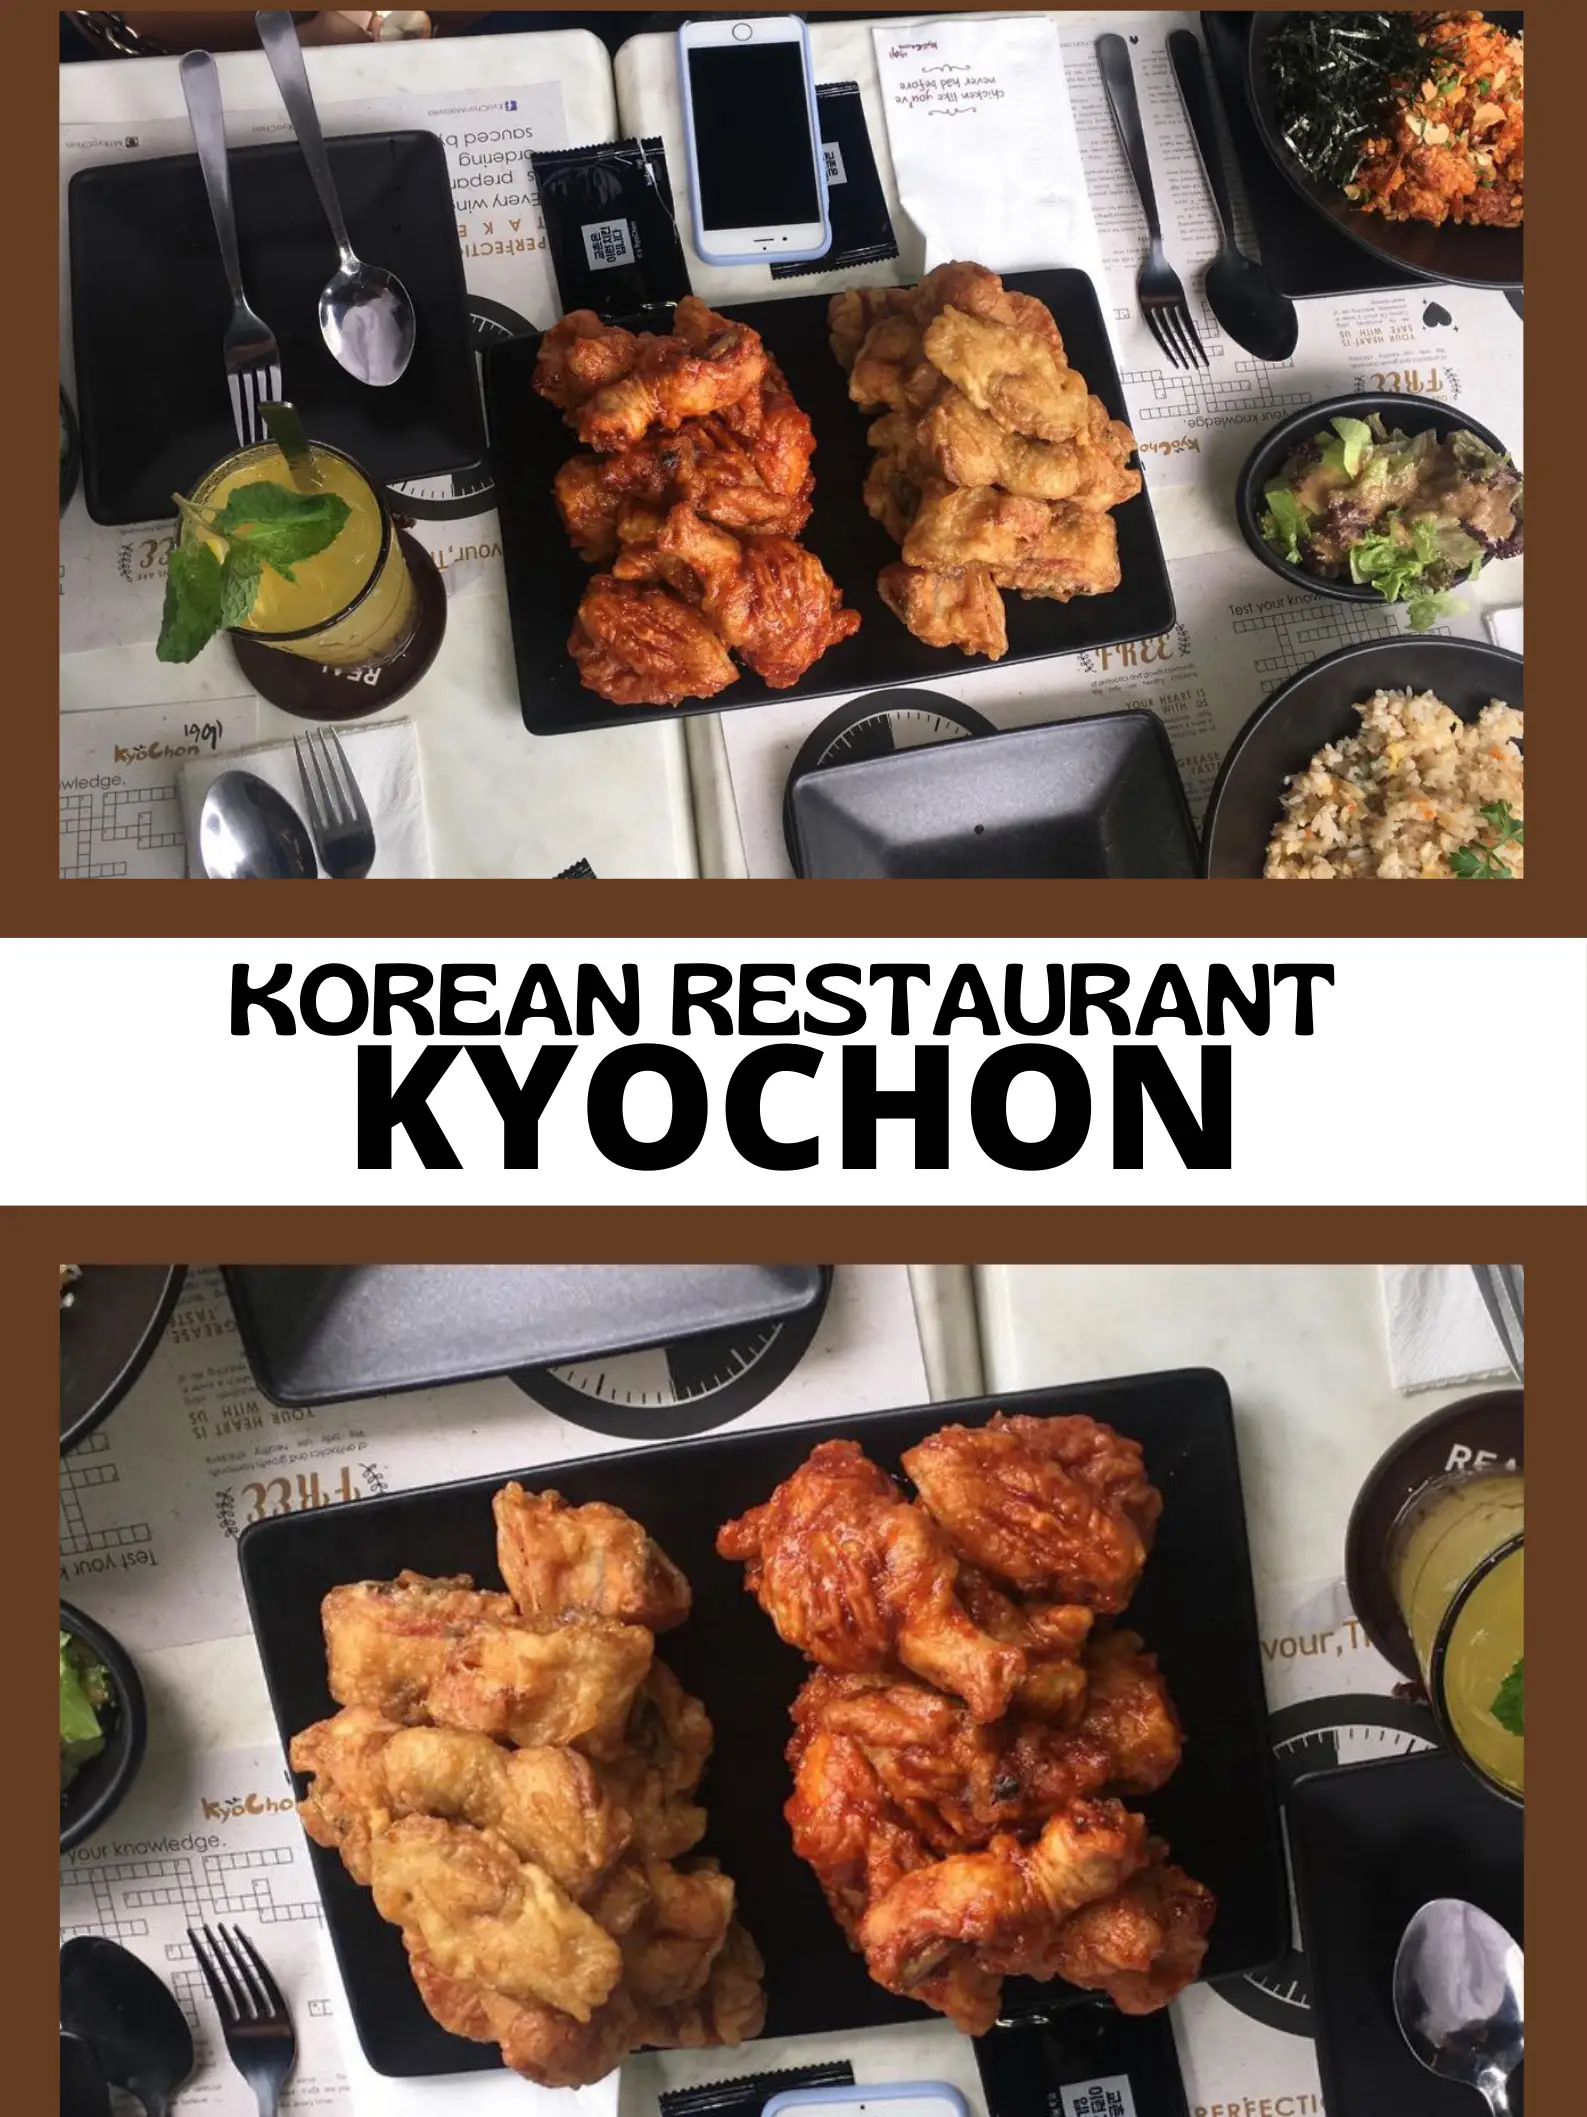 Future' Meat in Korean Restaurant?🤔, Galeri disiarkan oleh Melissaluvfood